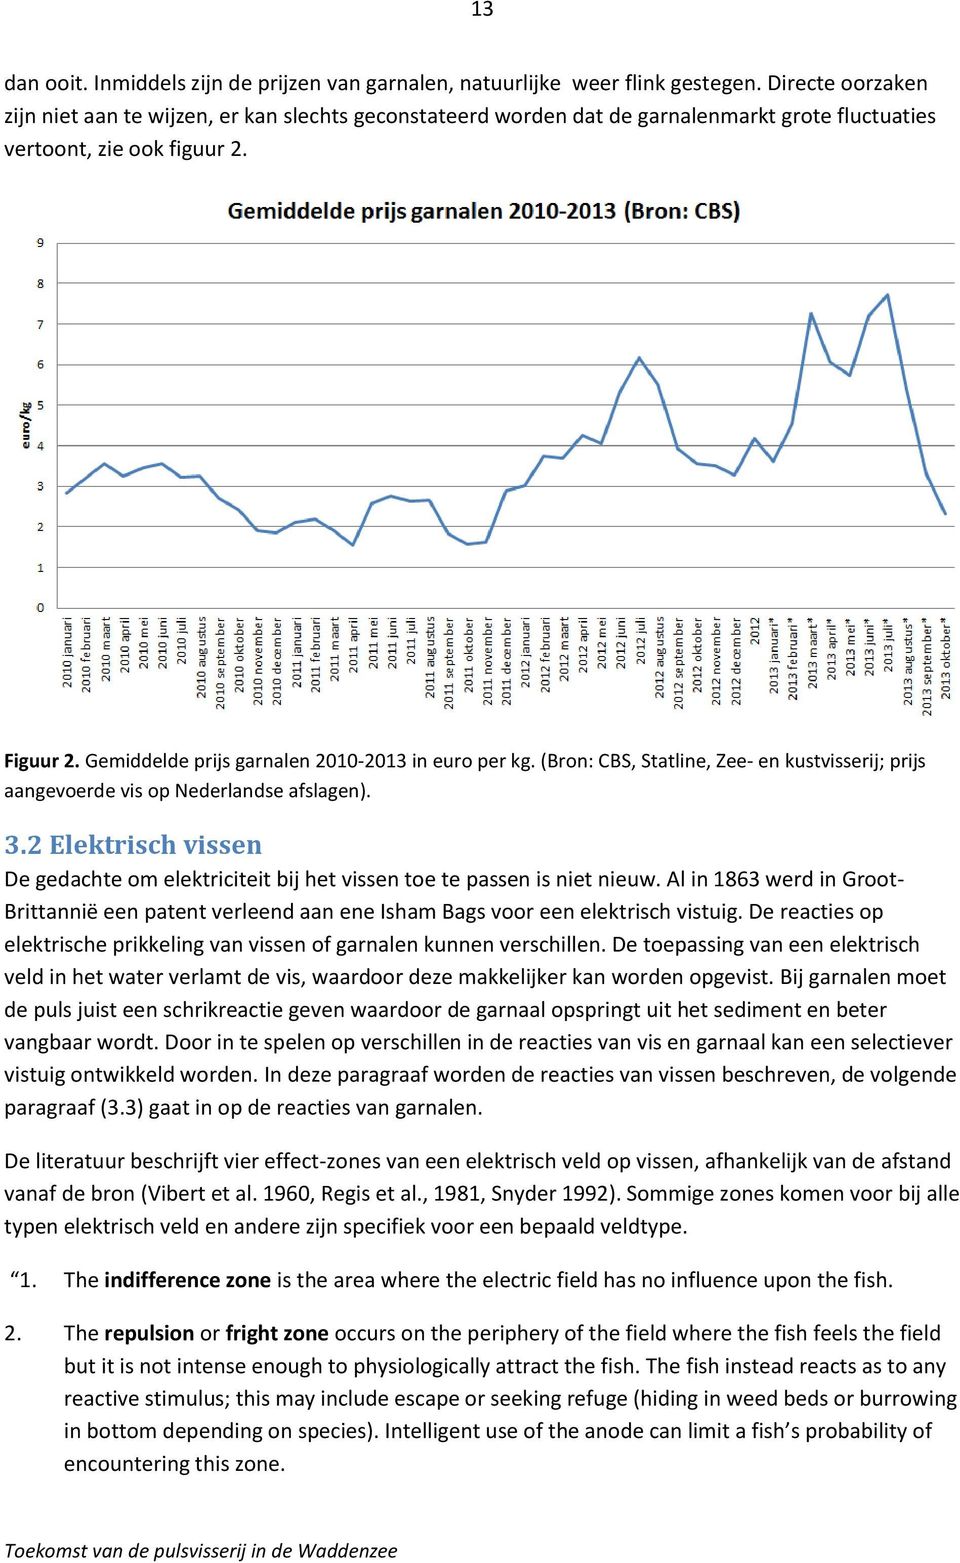 Gemiddelde prijs garnalen 2010-2013 in euro per kg. (Bron: CBS, Statline, Zee- en kustvisserij; prijs aangevoerde vis op Nederlandse afslagen). 3.